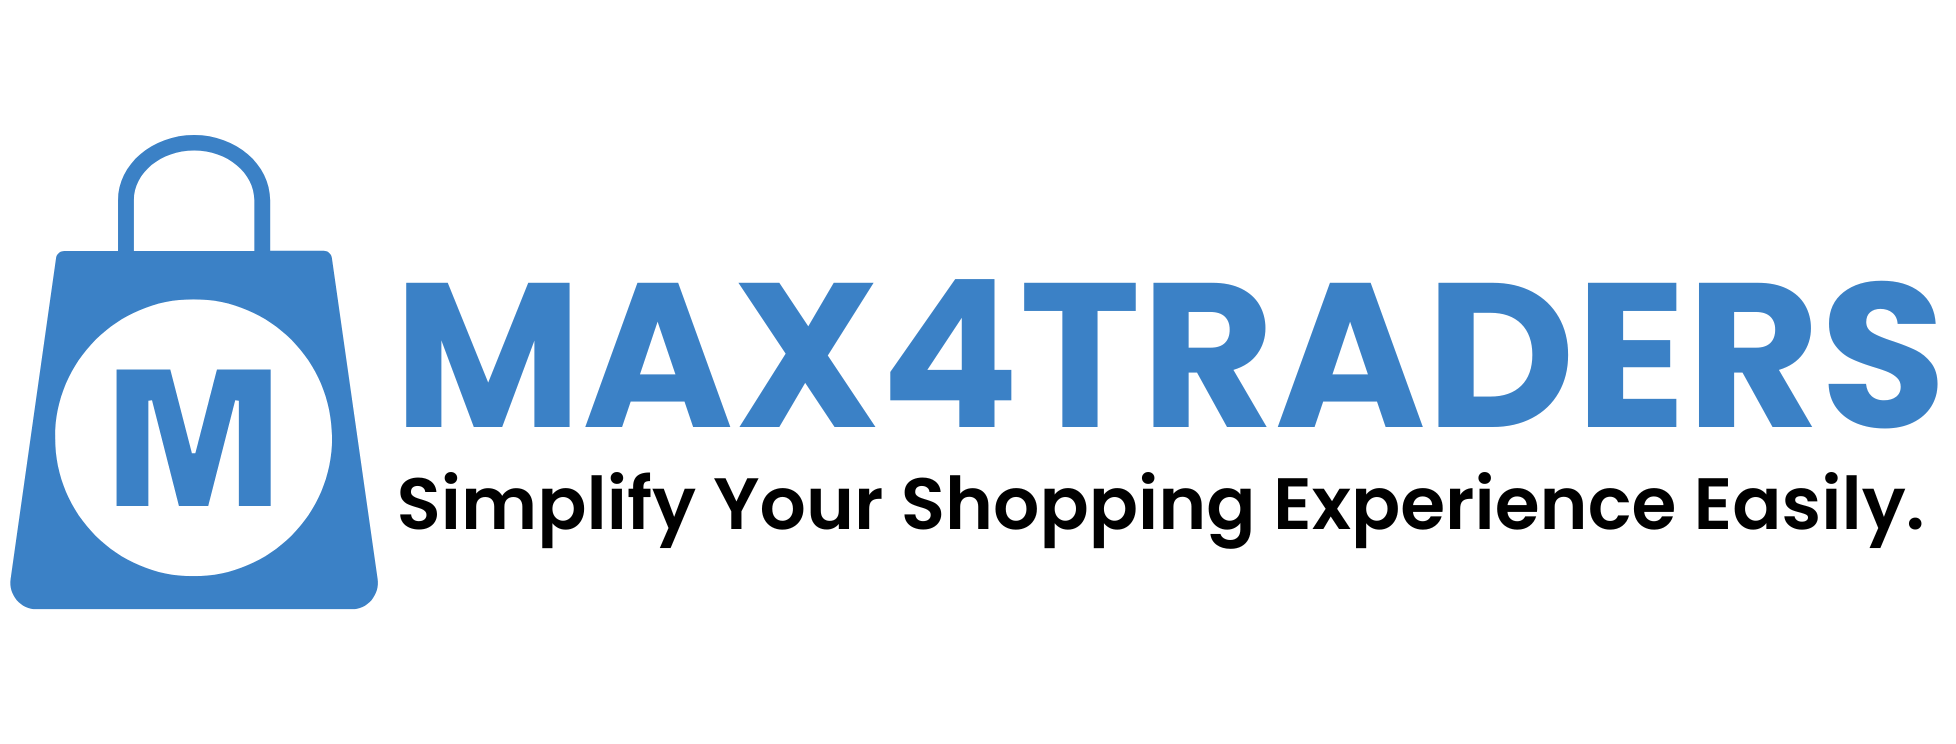 max4traders-website-logo